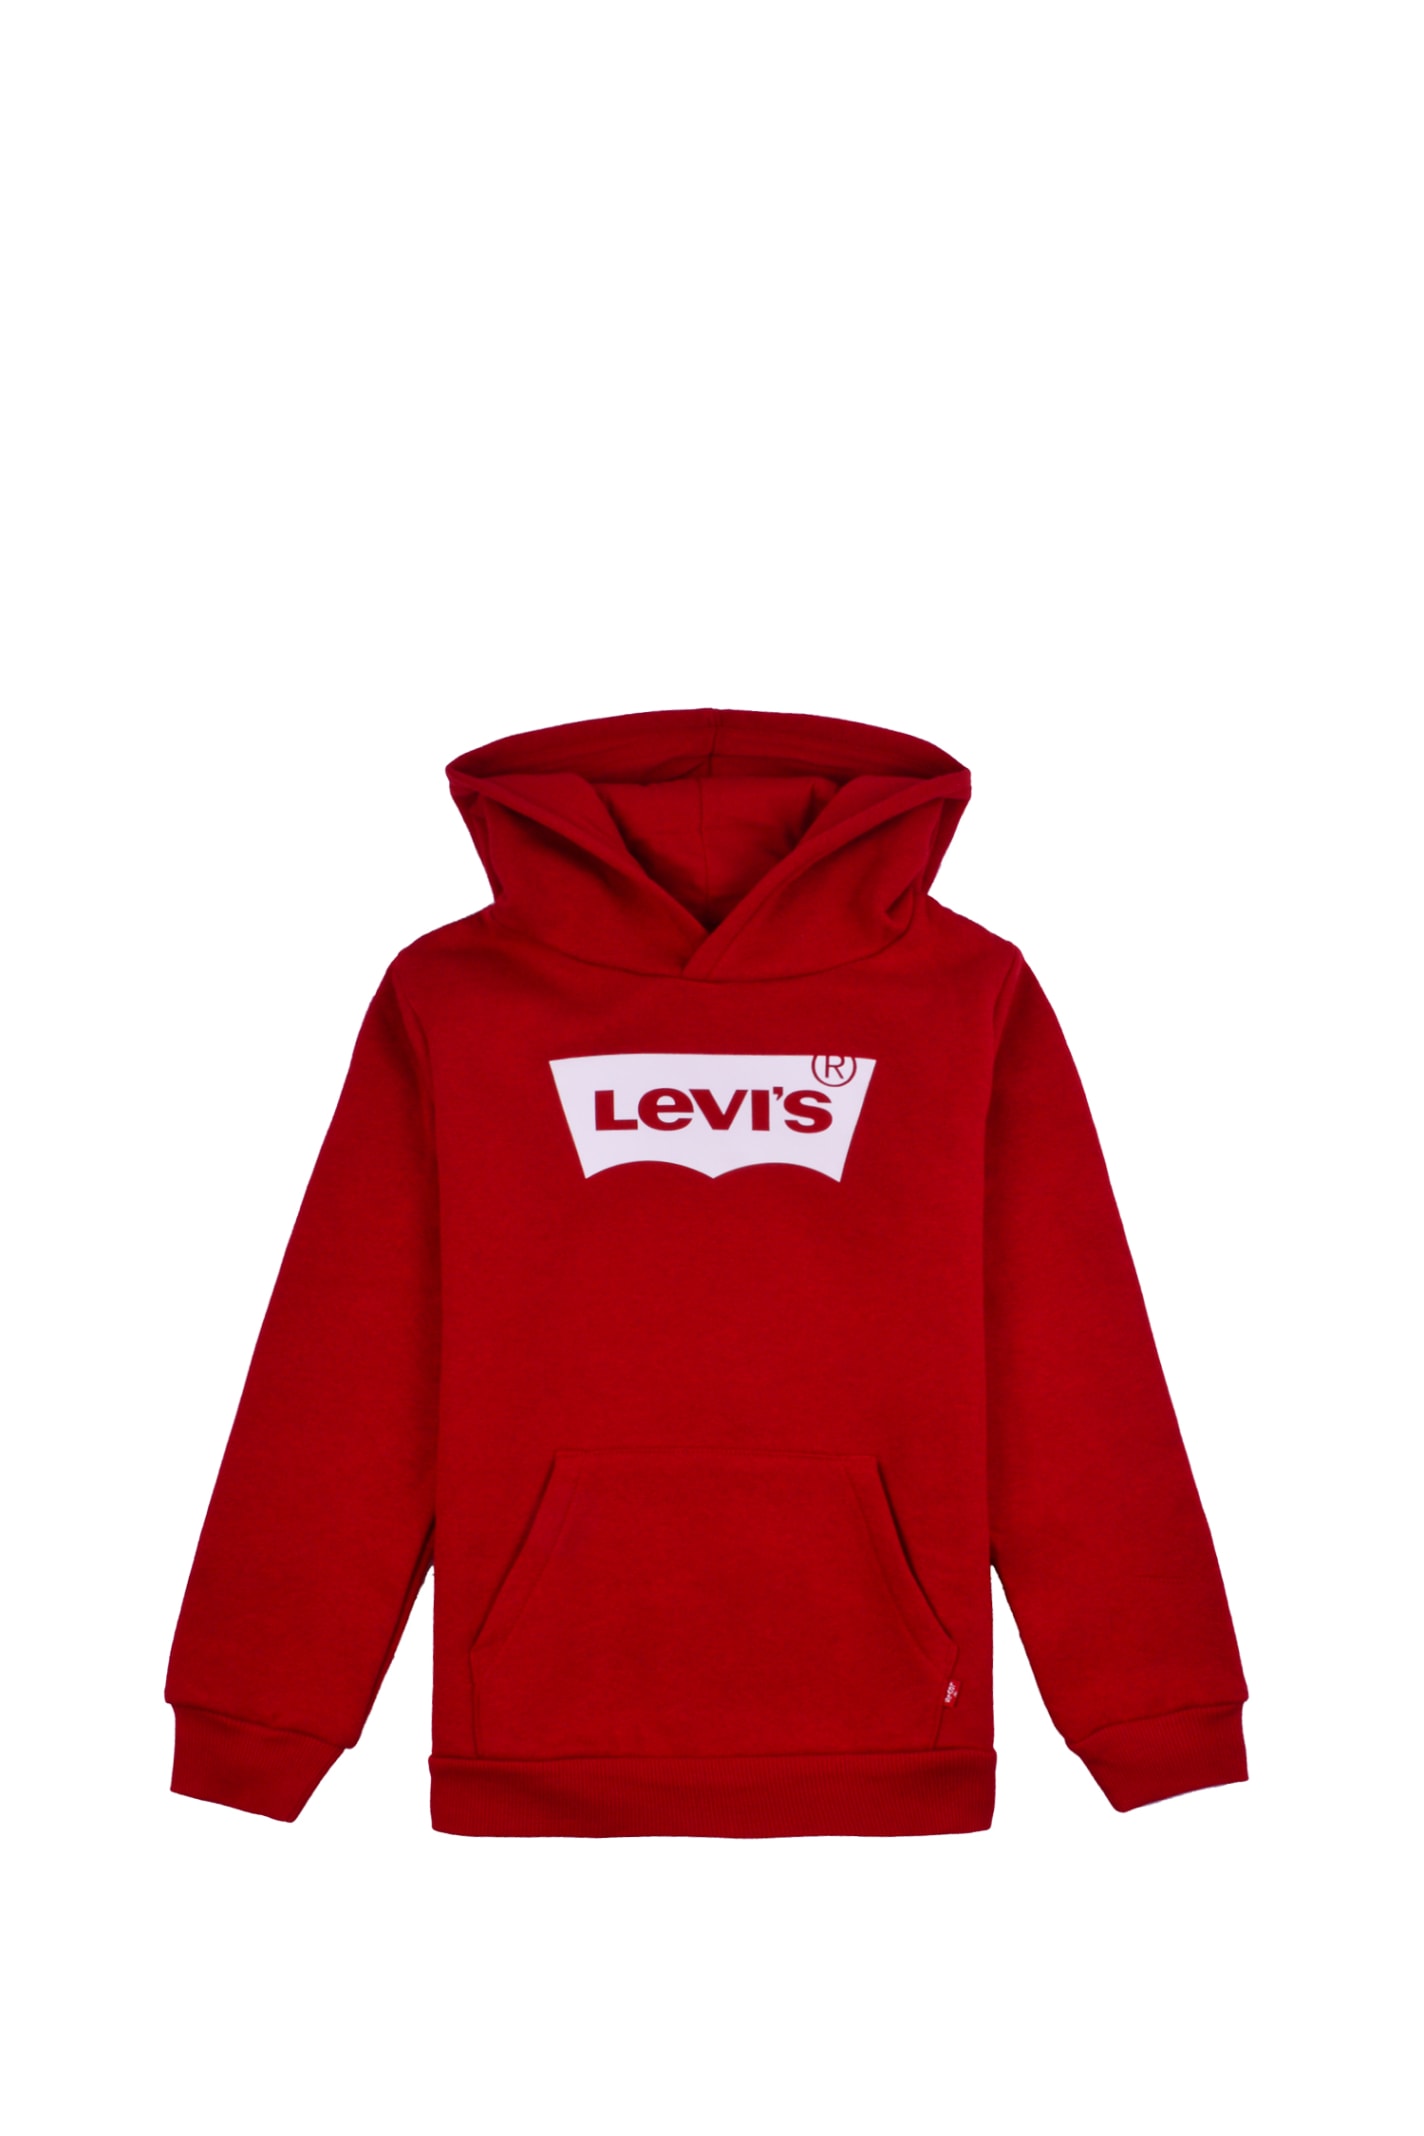 Levi's Cotton Sweatshirt With Hood